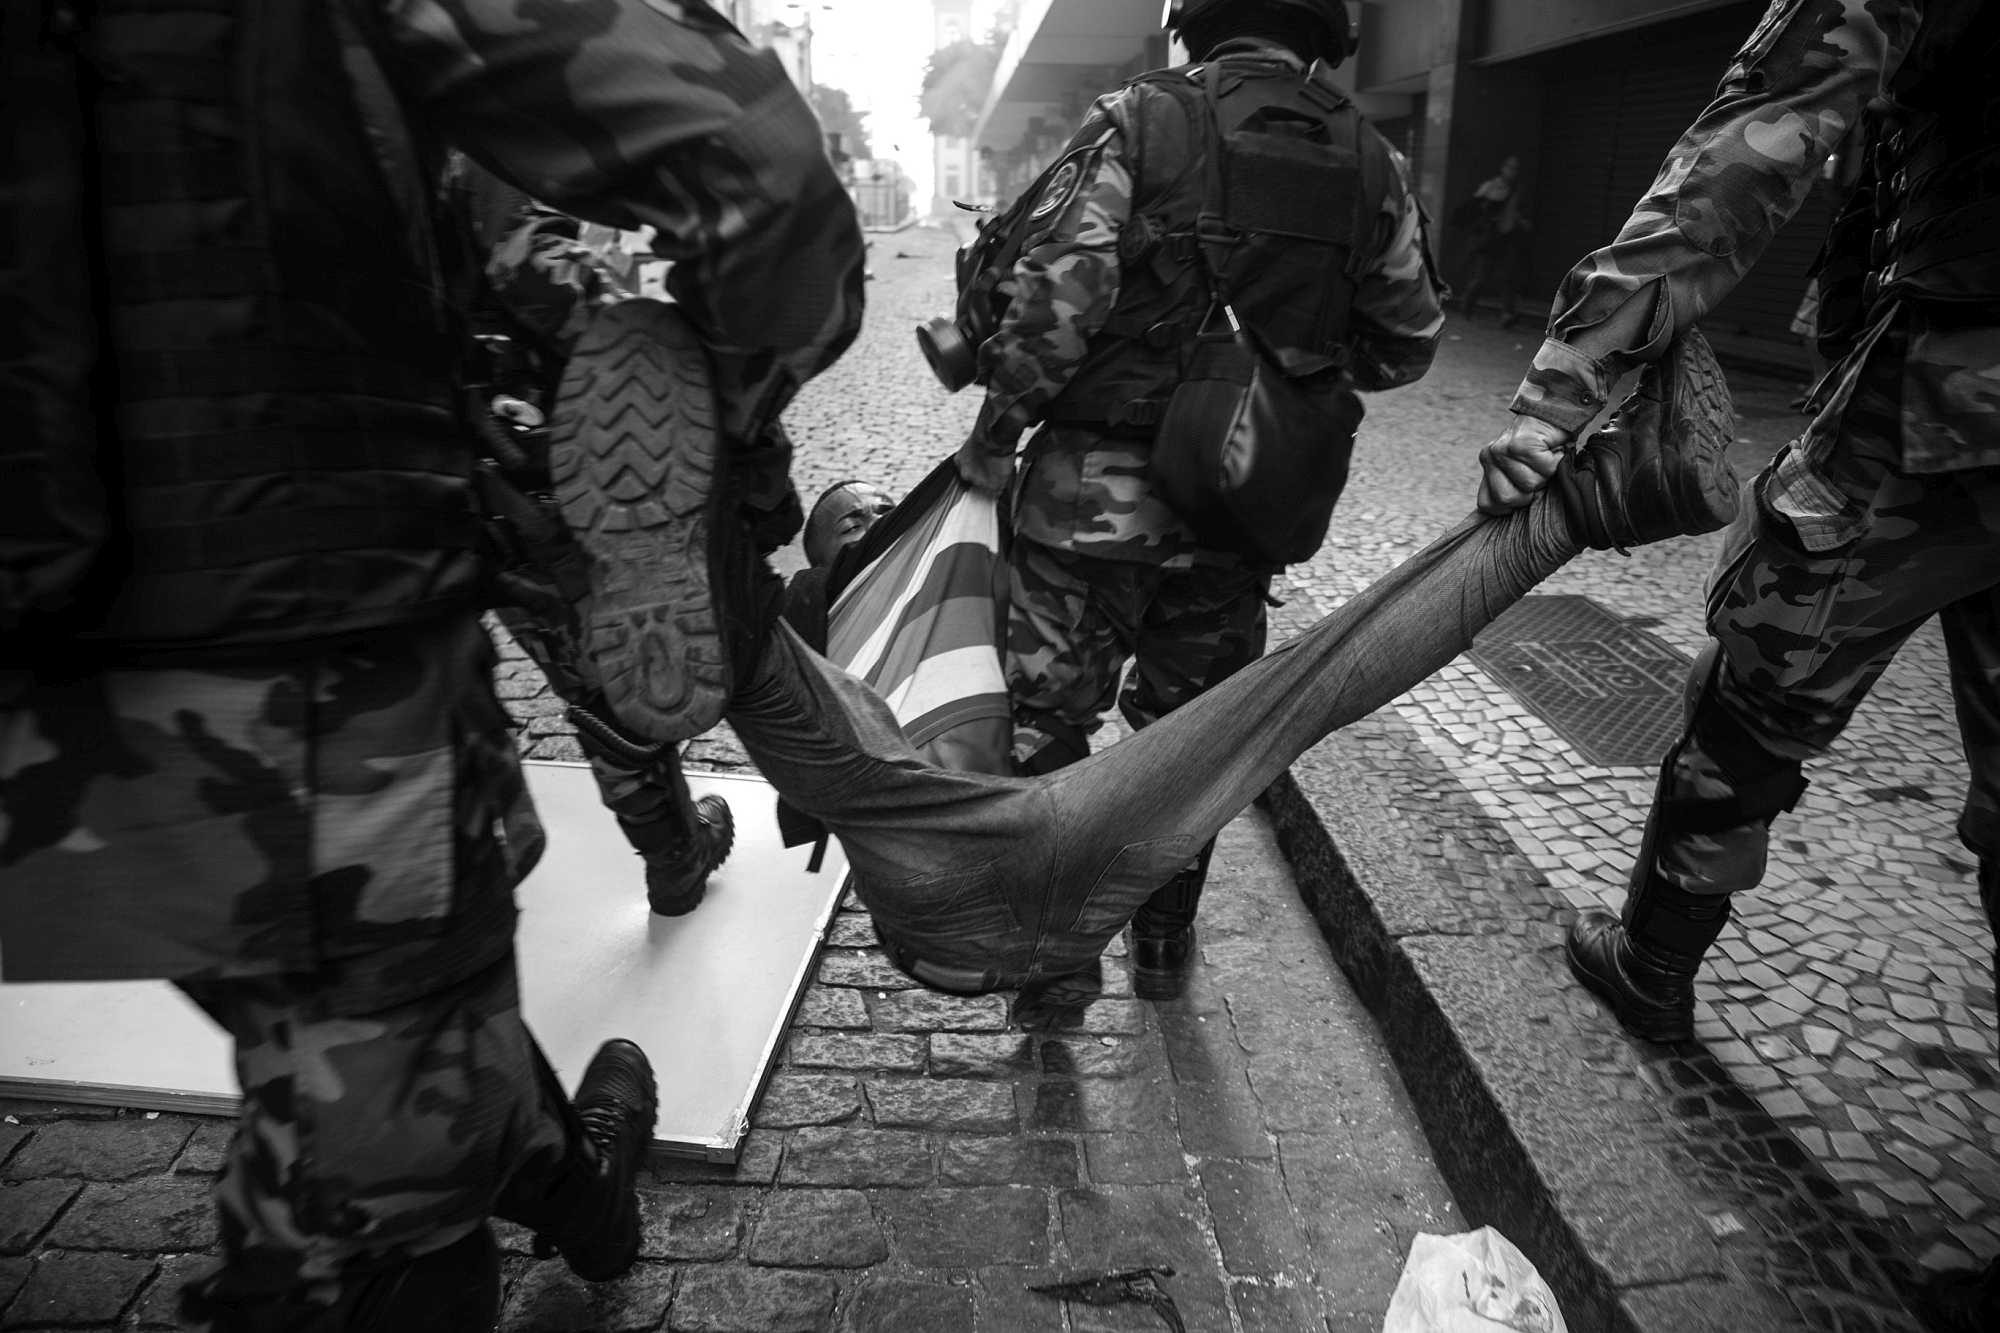 Police drag protester in Rio - Photo by Pedro Prado